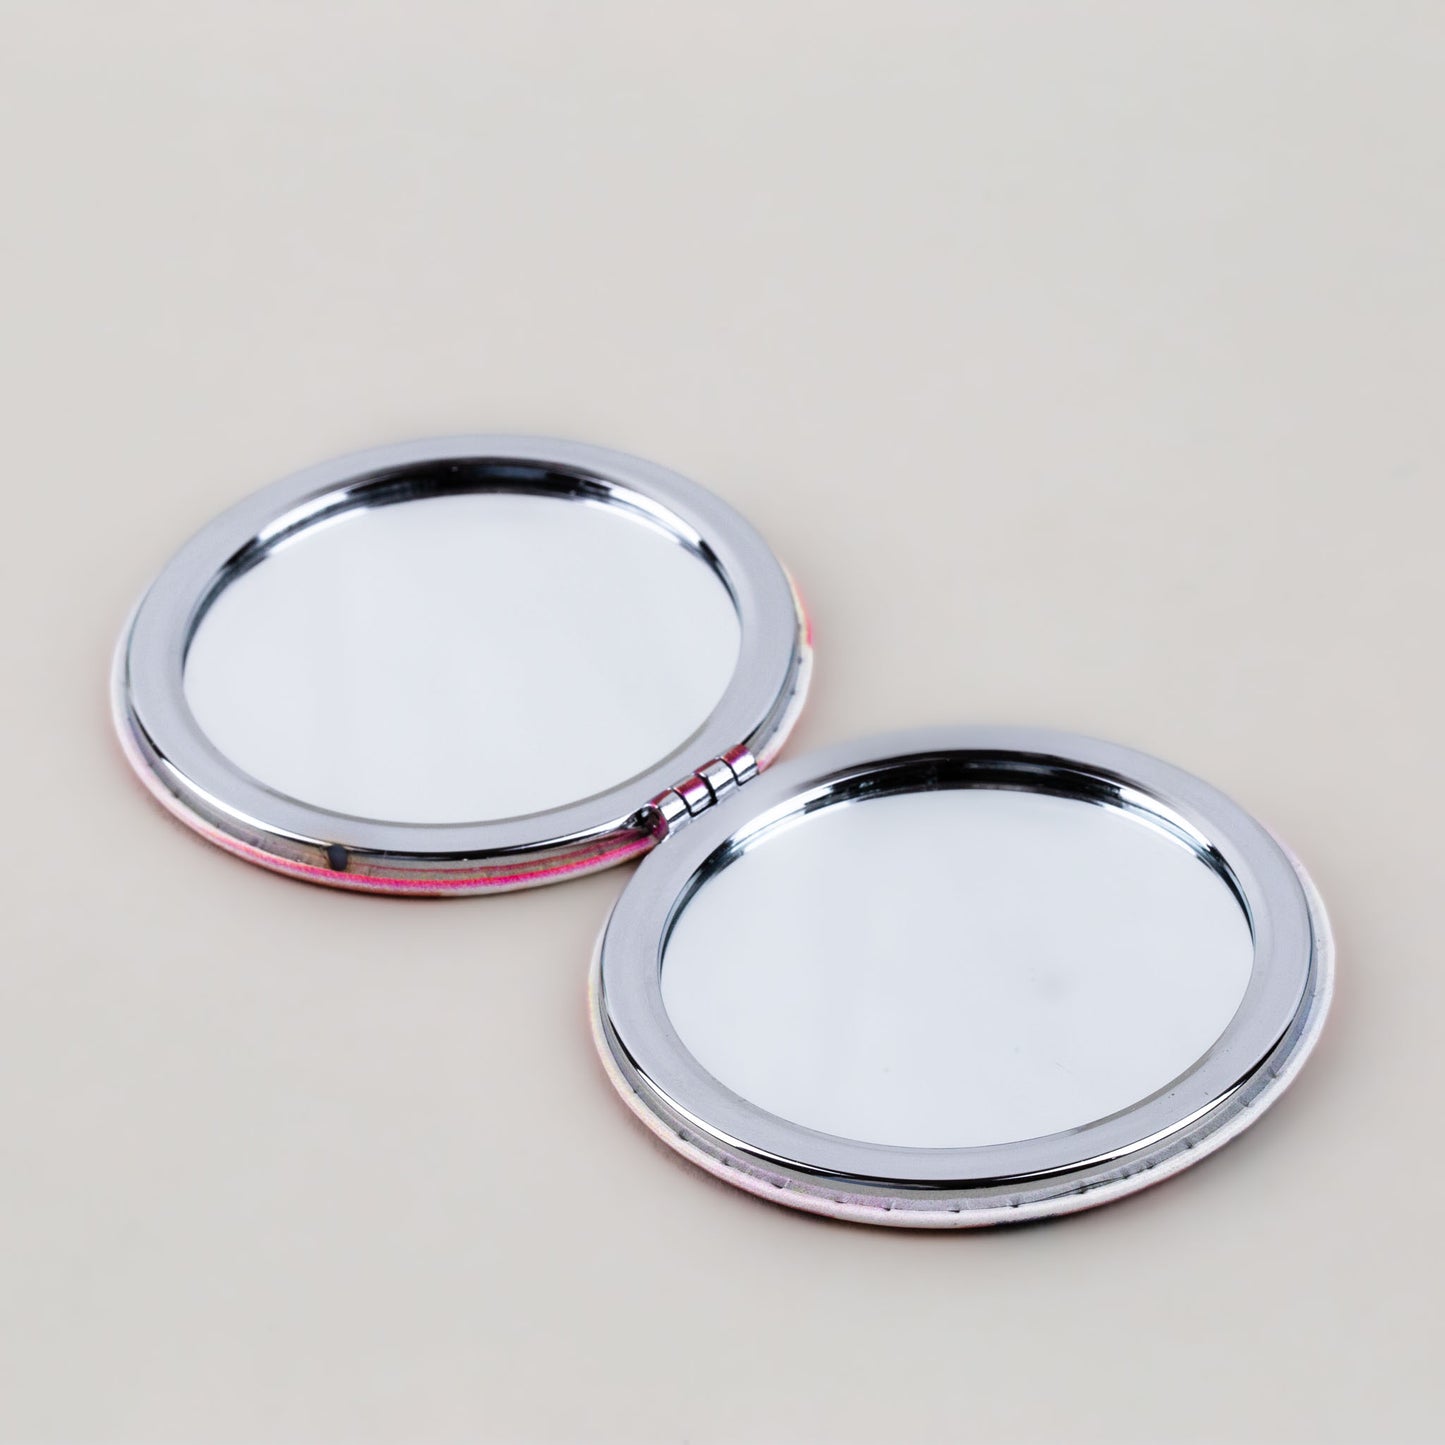 Oglindă de poșetă, formă rotundă cu 2 părți, model seniorita - Elegance